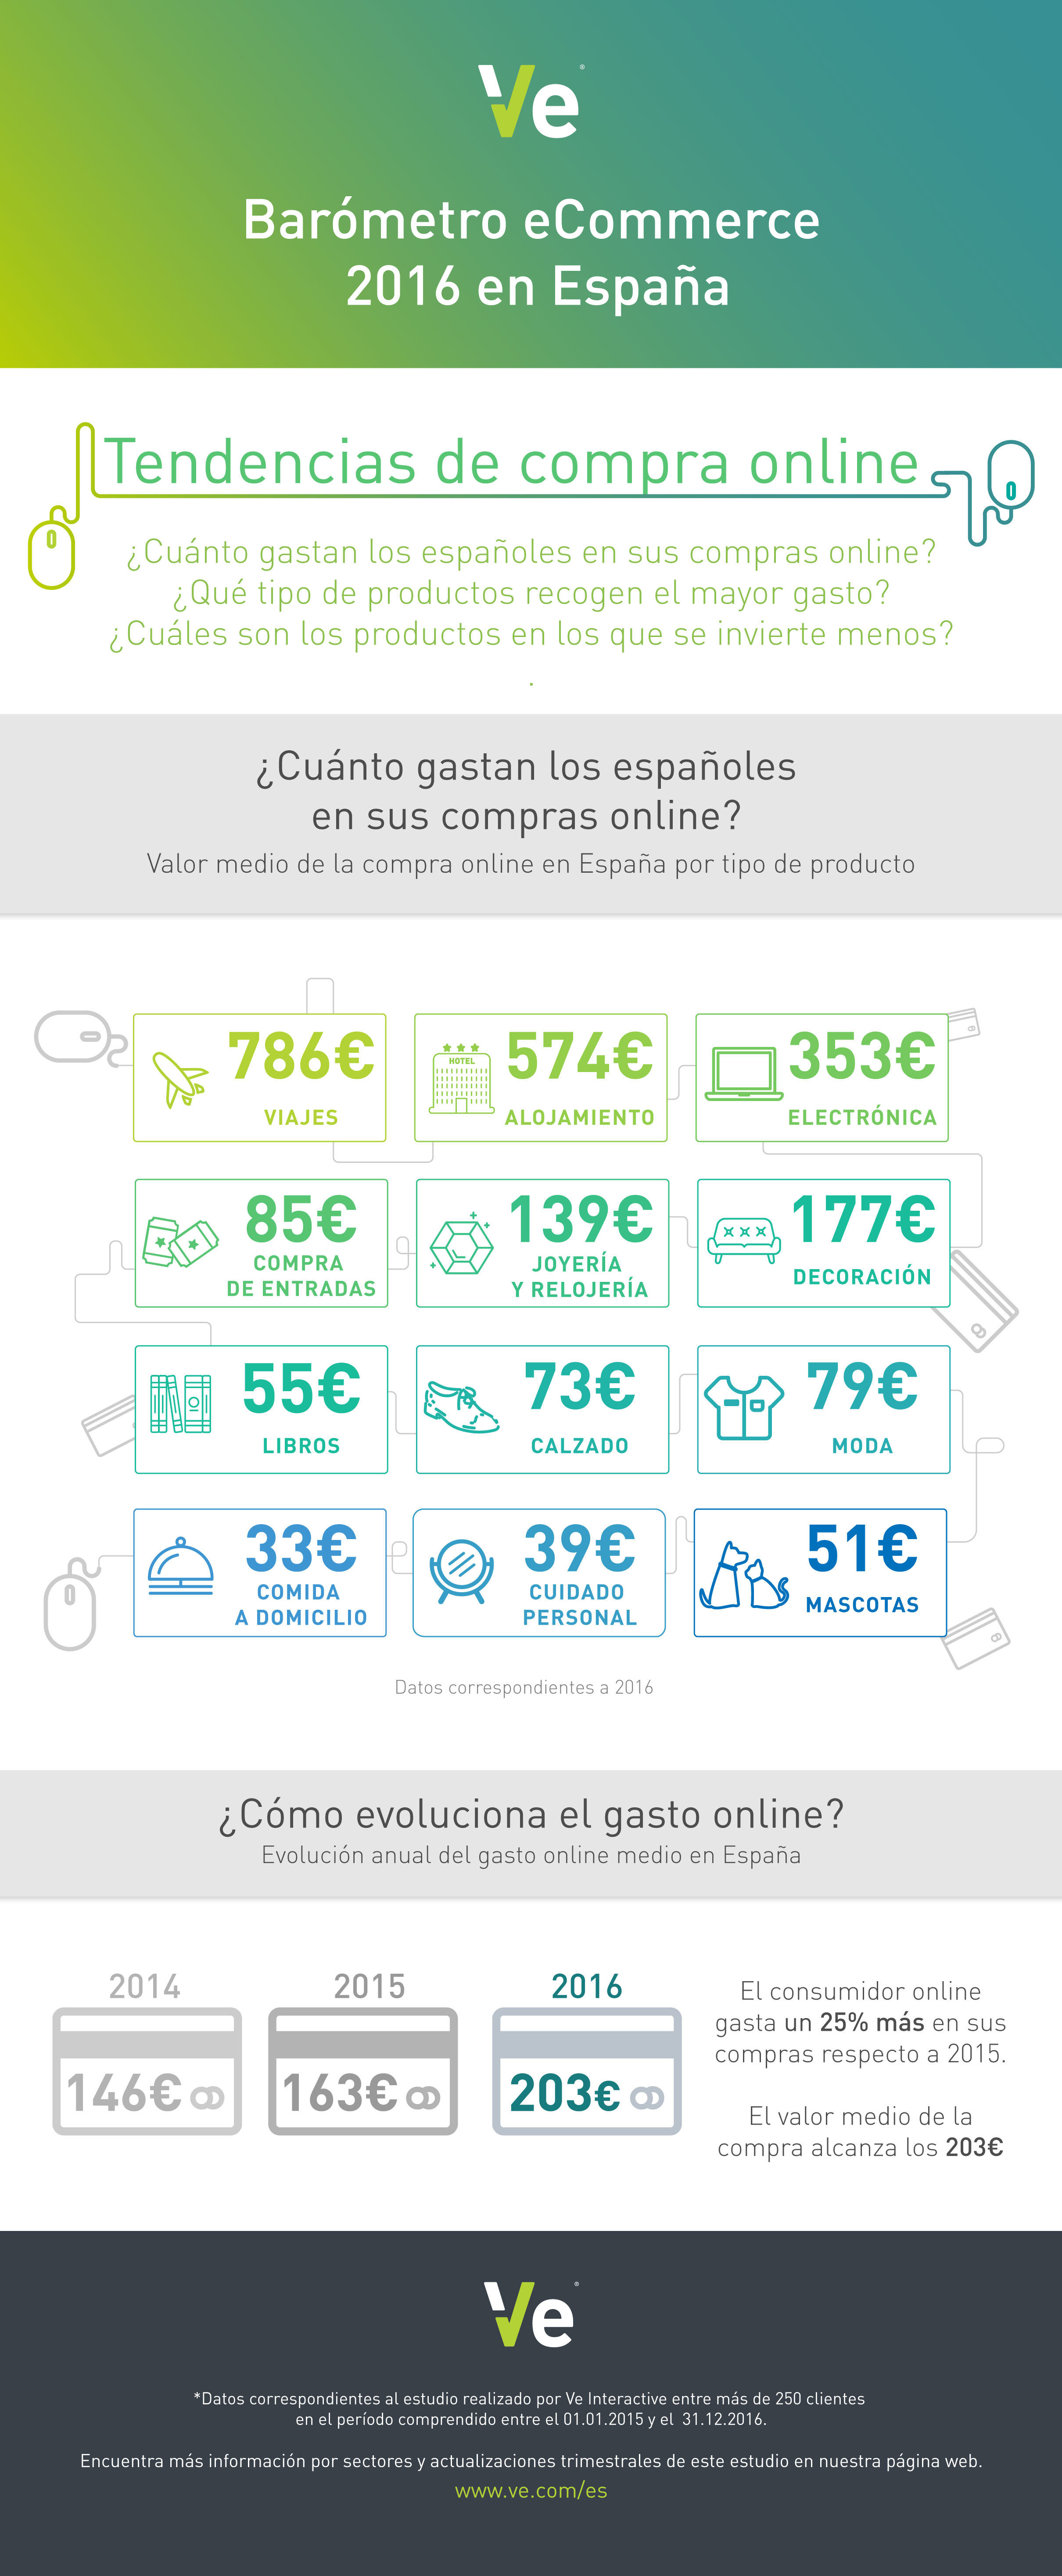 La cesta media de los consumidores on-line superó los 200 euros en 2016